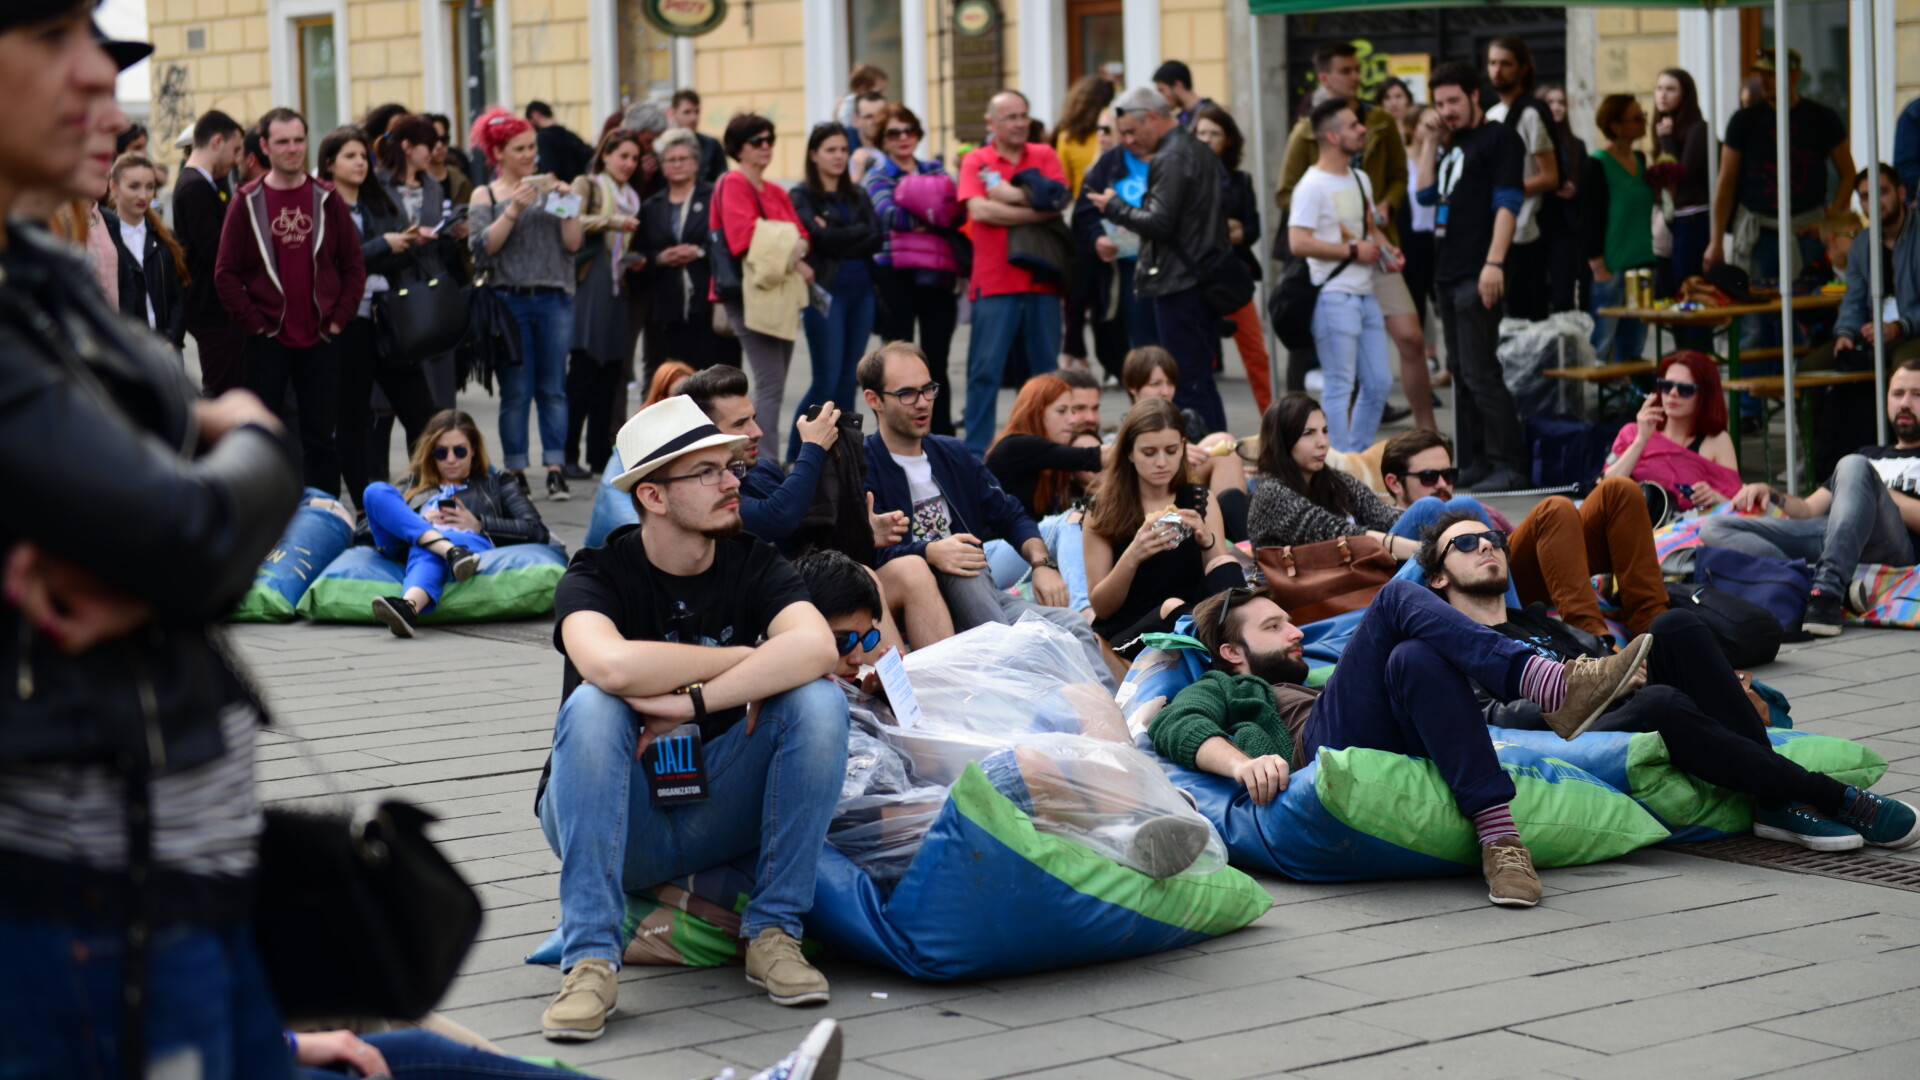 Clujul, animat de arta. Mii de persoane au asistat la evenimentele organizate la Jazz in the Street